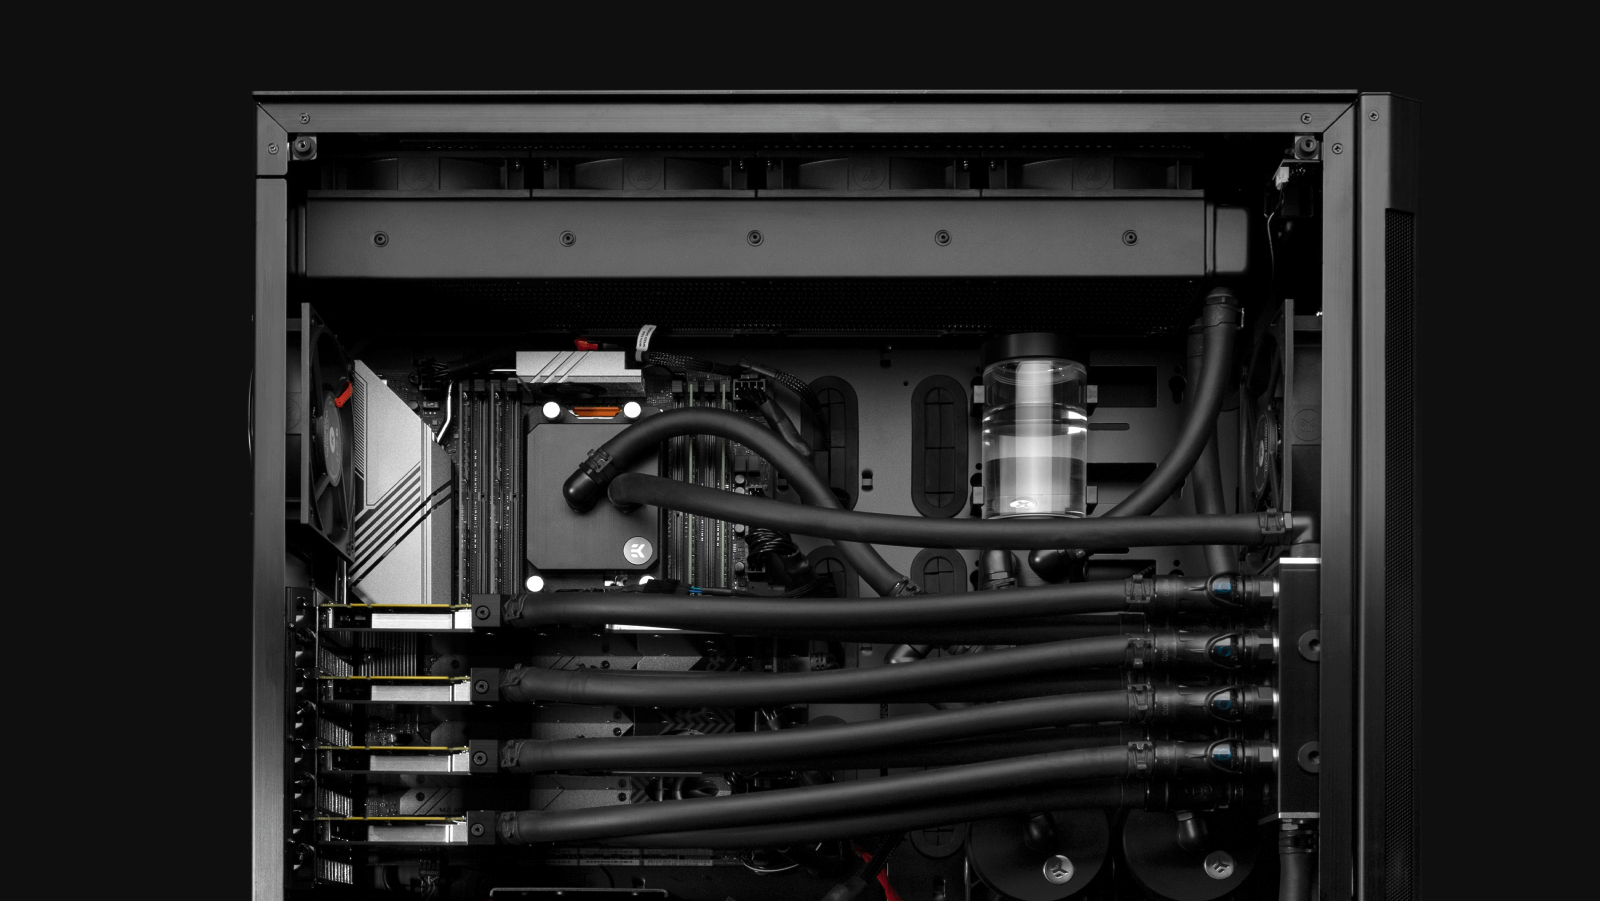 EK Fluid Works Studio Series S5000 with quad GPUs